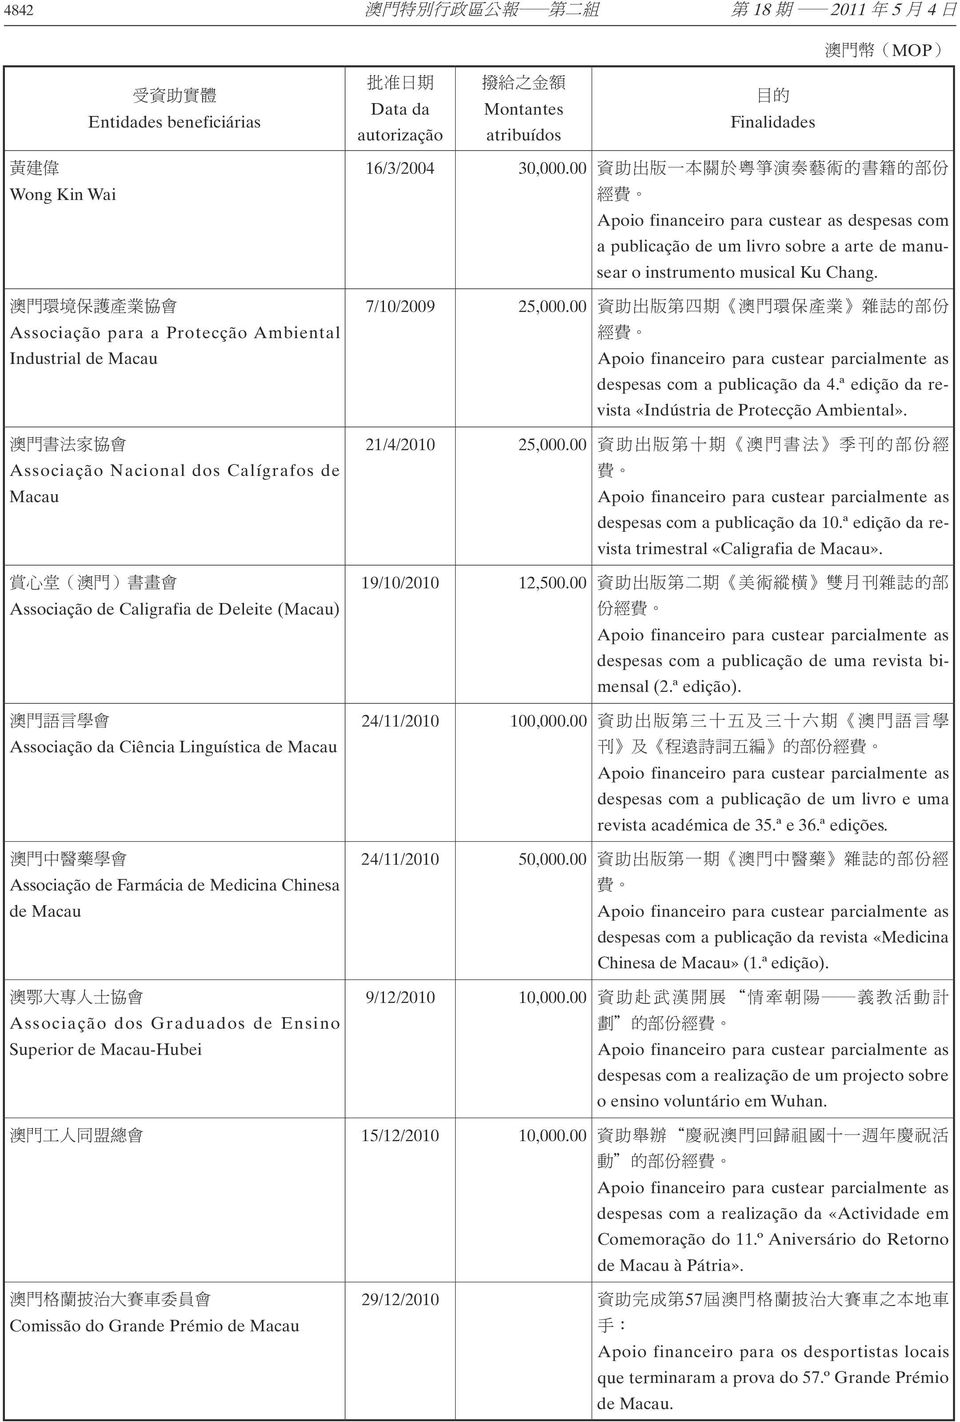 Superior de Macau-Hubei 16/3/2004 30,000.00 Apoio financeiro para custear as despesas com a publicação de um livro sobre a arte de manusear o instrumento musical Ku Chang. 7/10/2009 25,000.